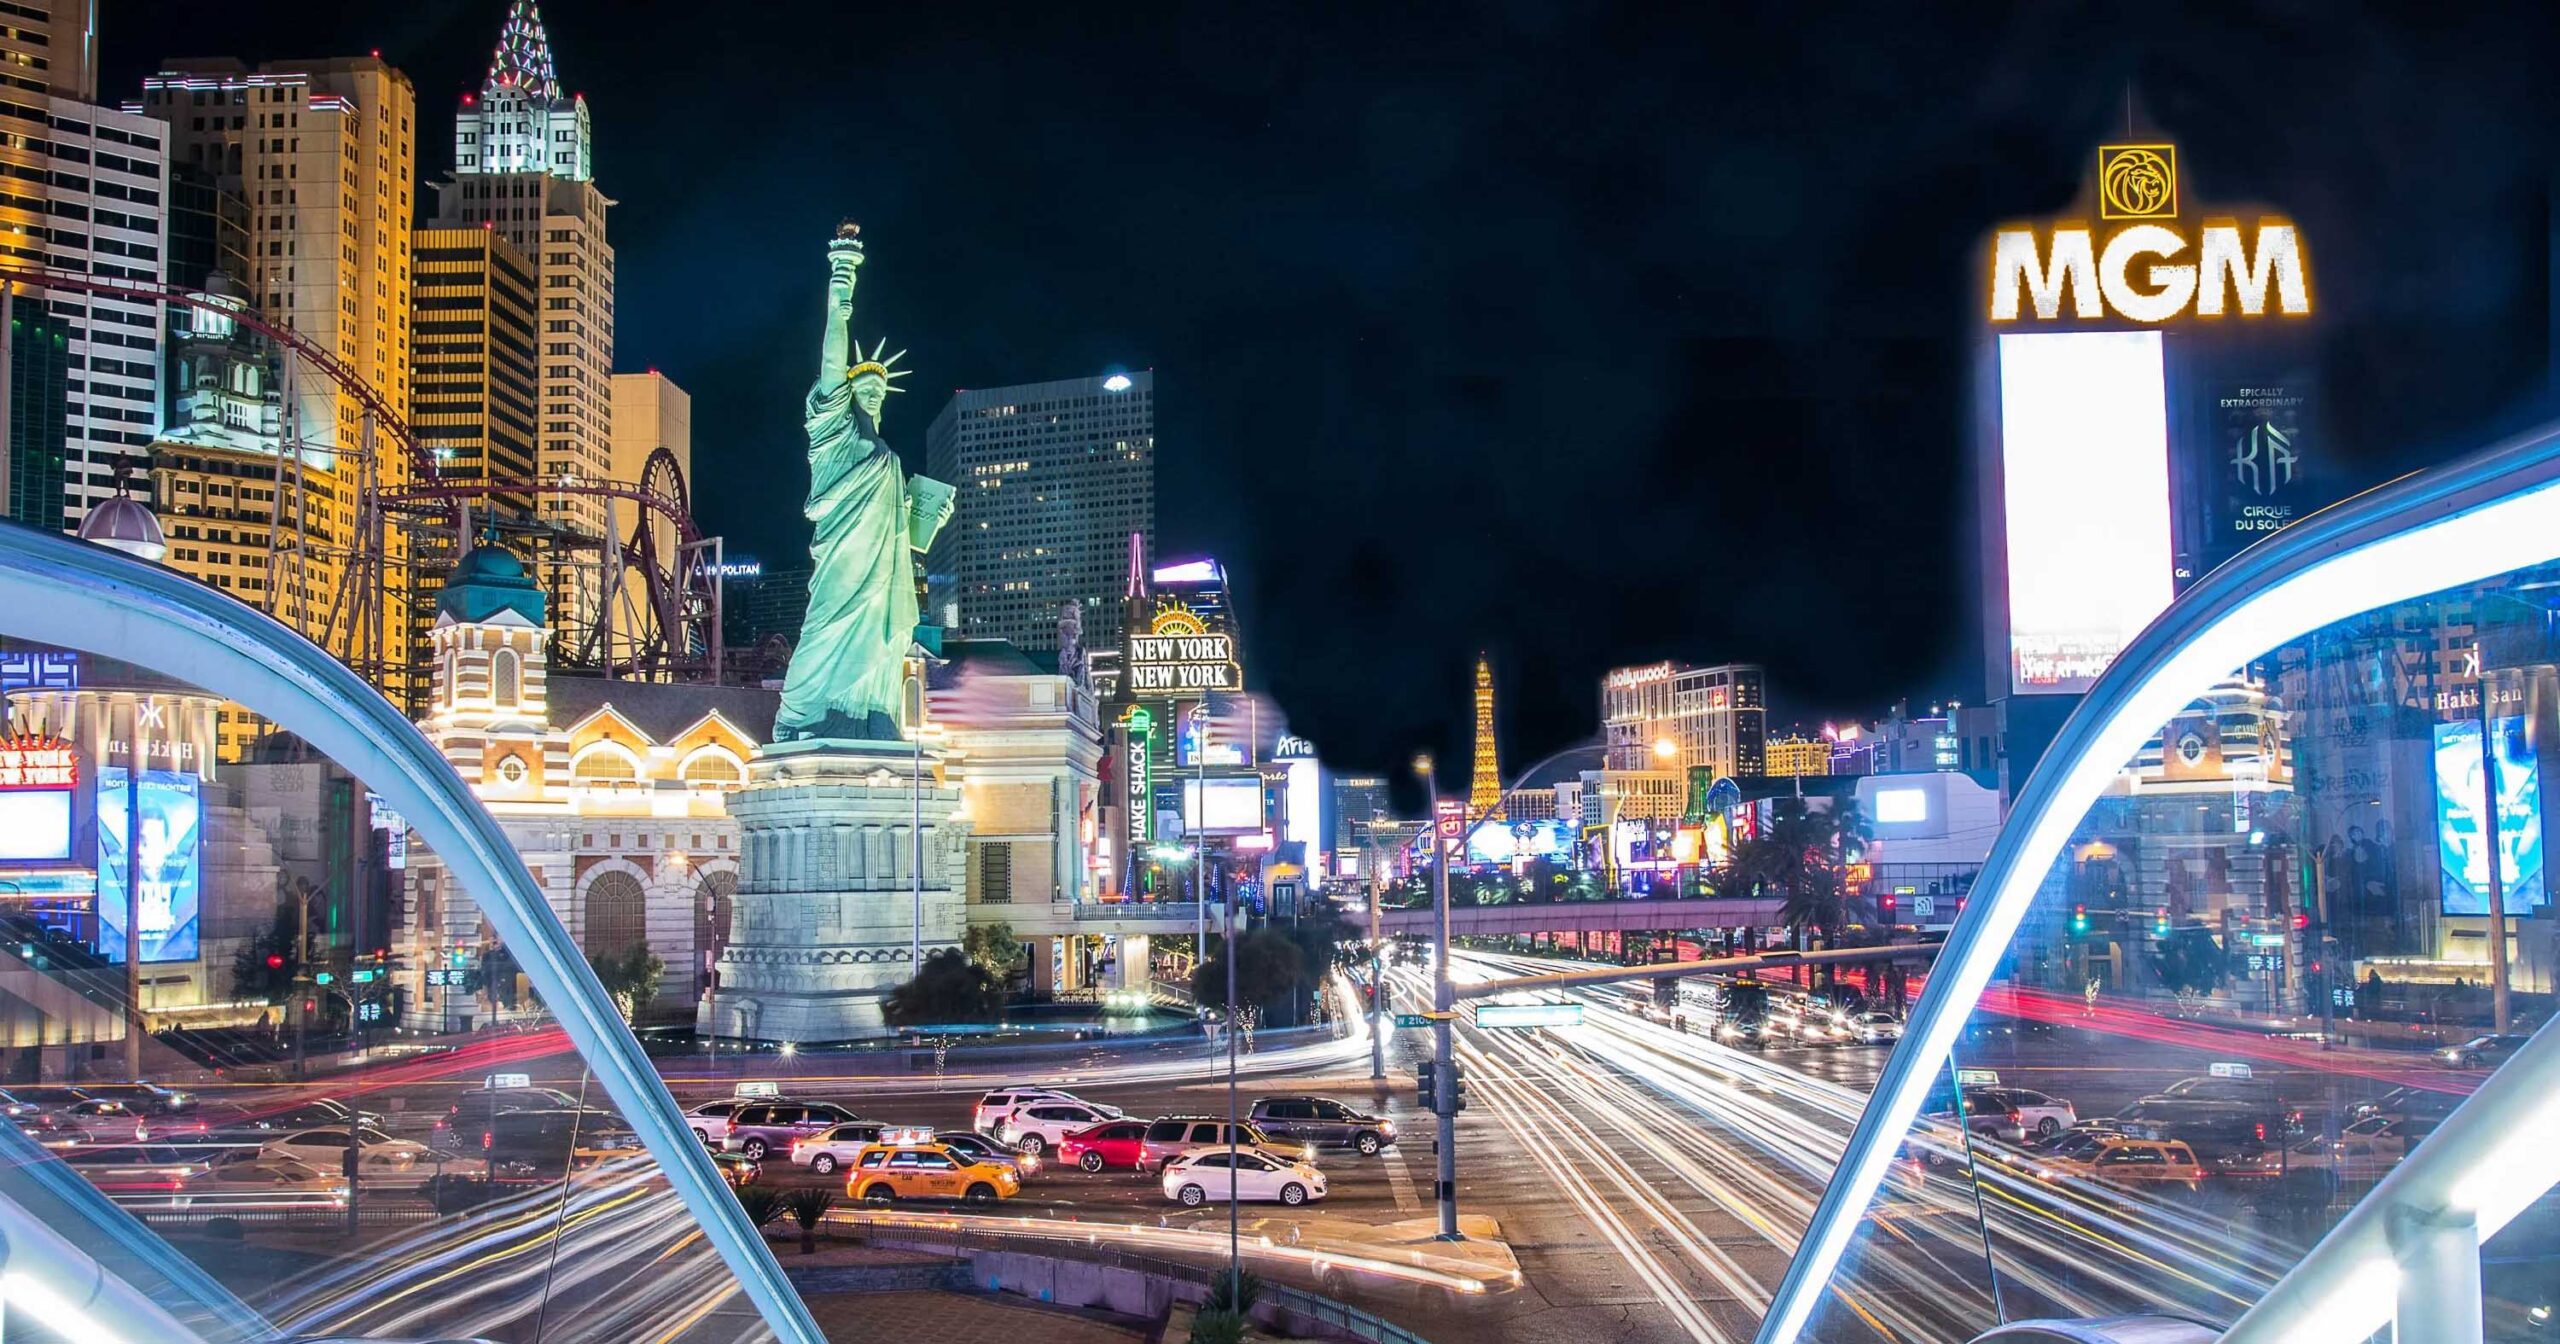 Ney York-New York location Las Vegas Strip